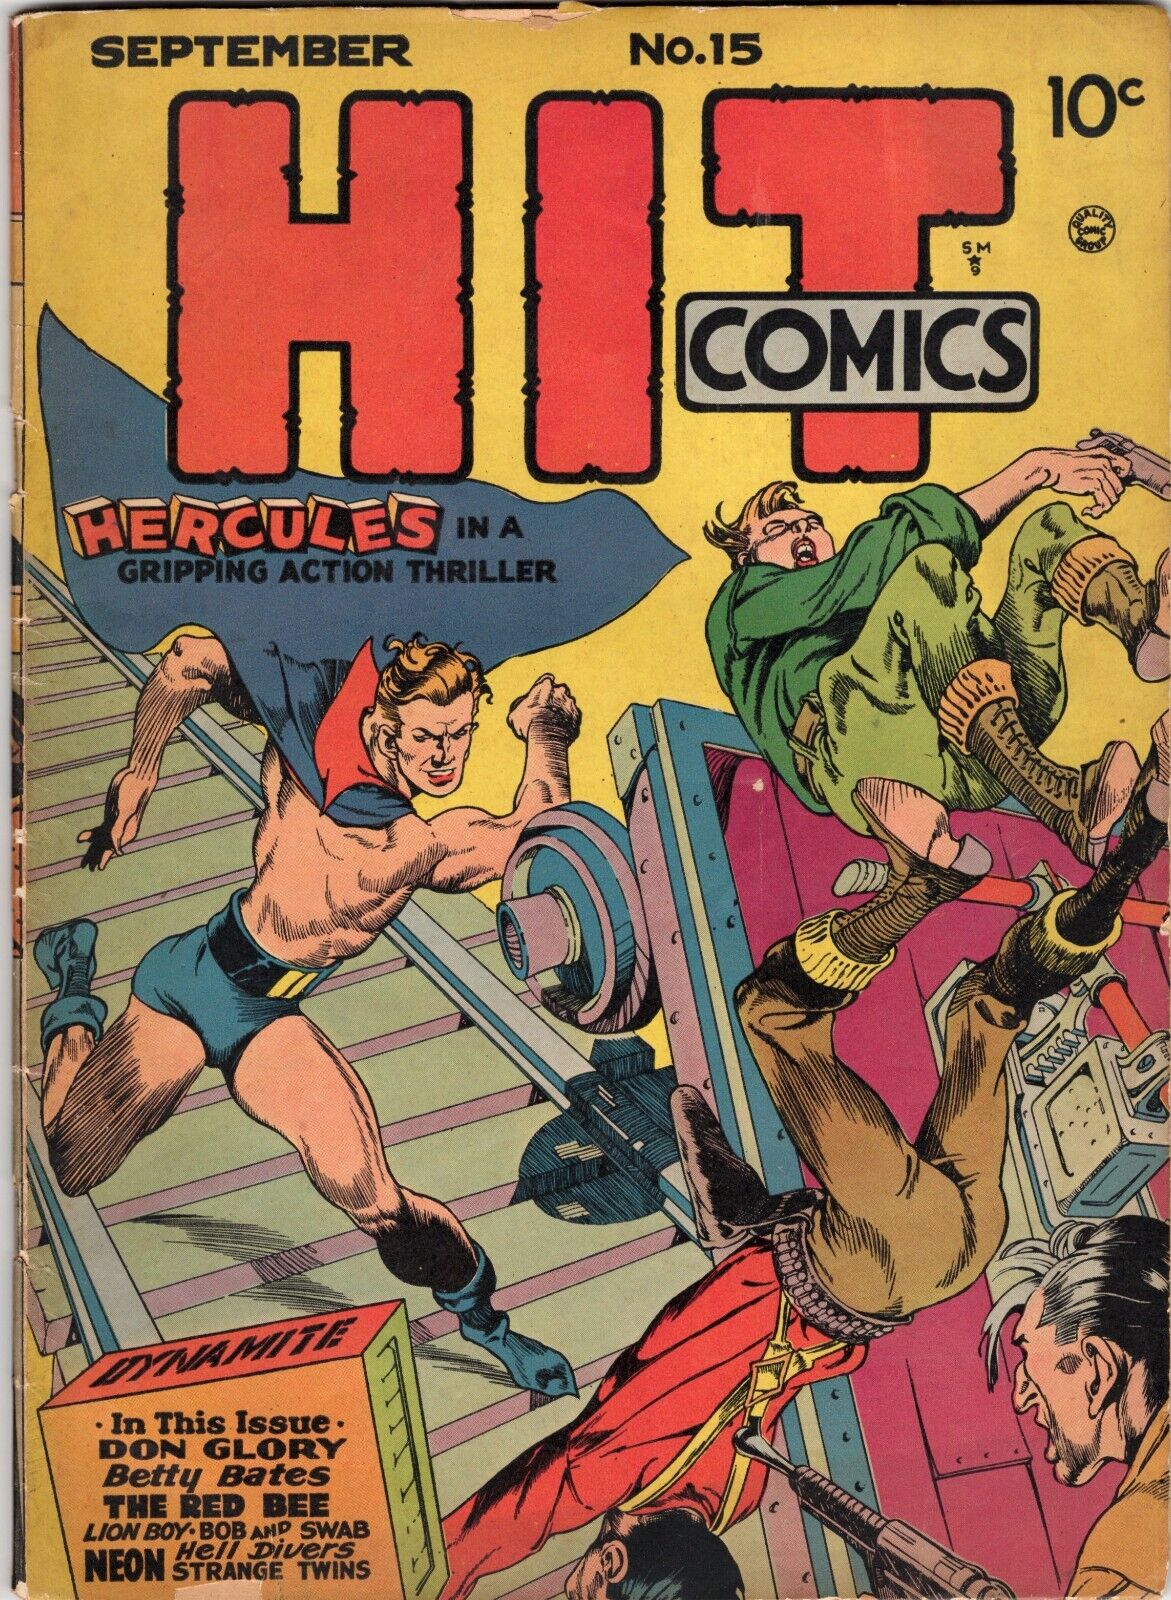 Hit Comics #15 Quality 1941 FN- 5.5